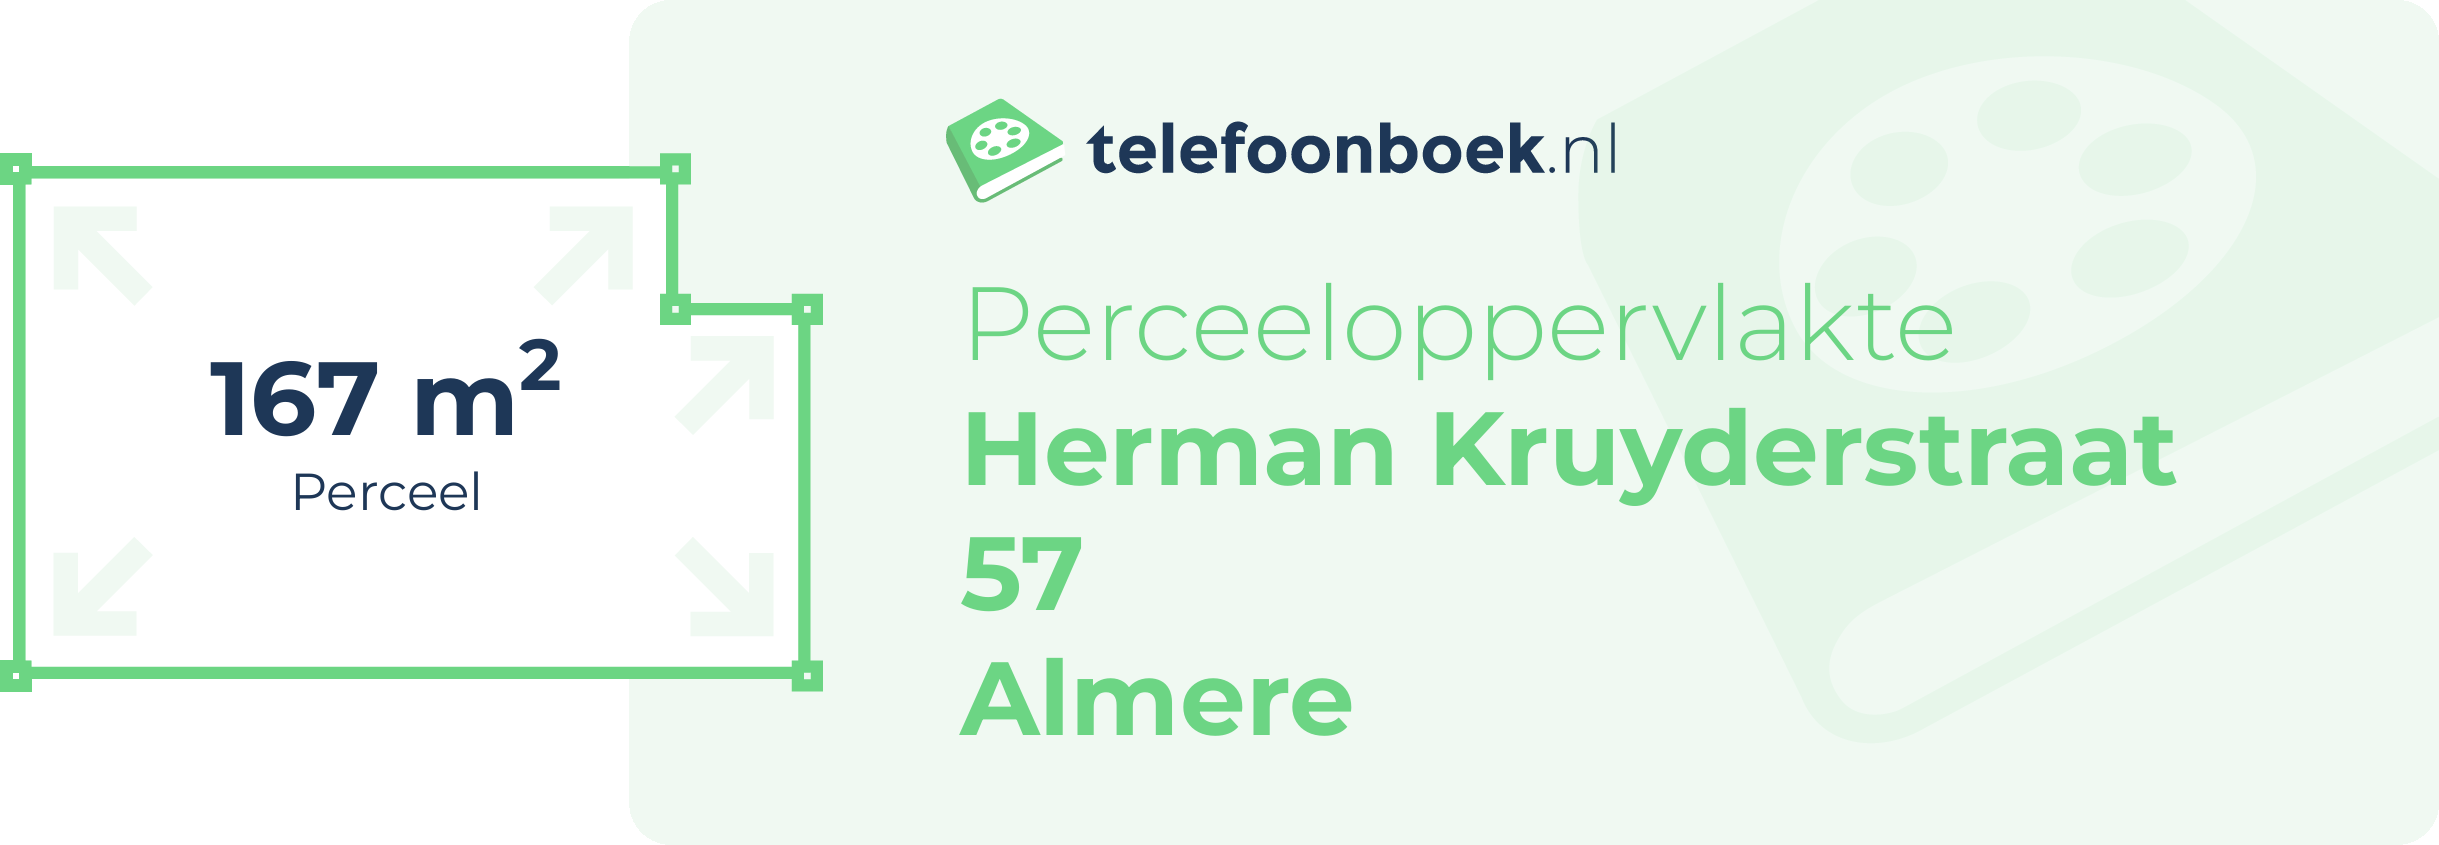 Perceeloppervlakte Herman Kruyderstraat 57 Almere